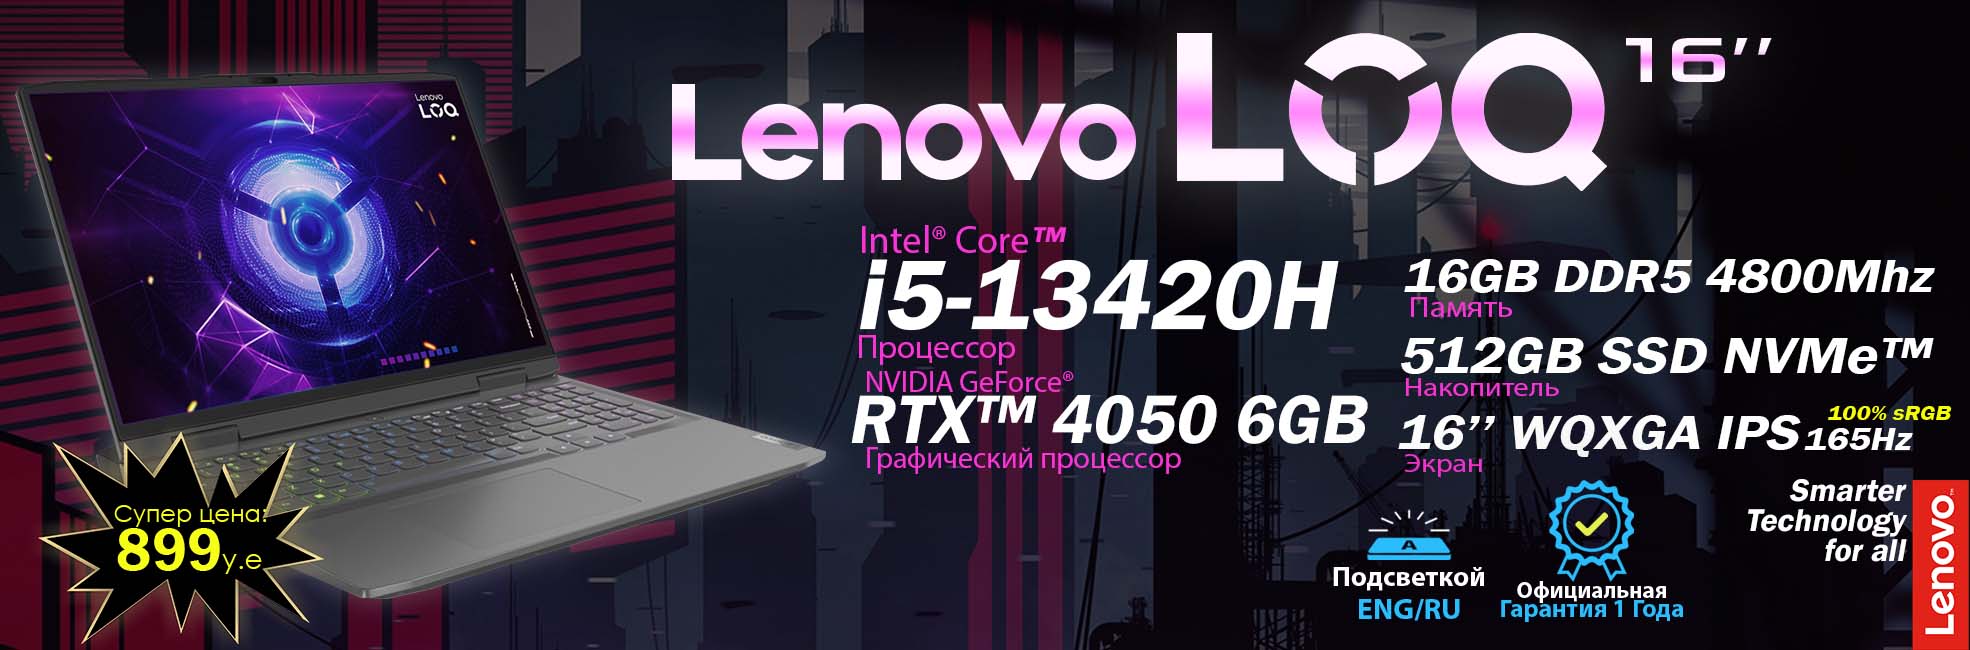 LOQ 16 i5 1970x650 1 Lenovo-ideaPad-ish va o'qish uchun Noutbuklar